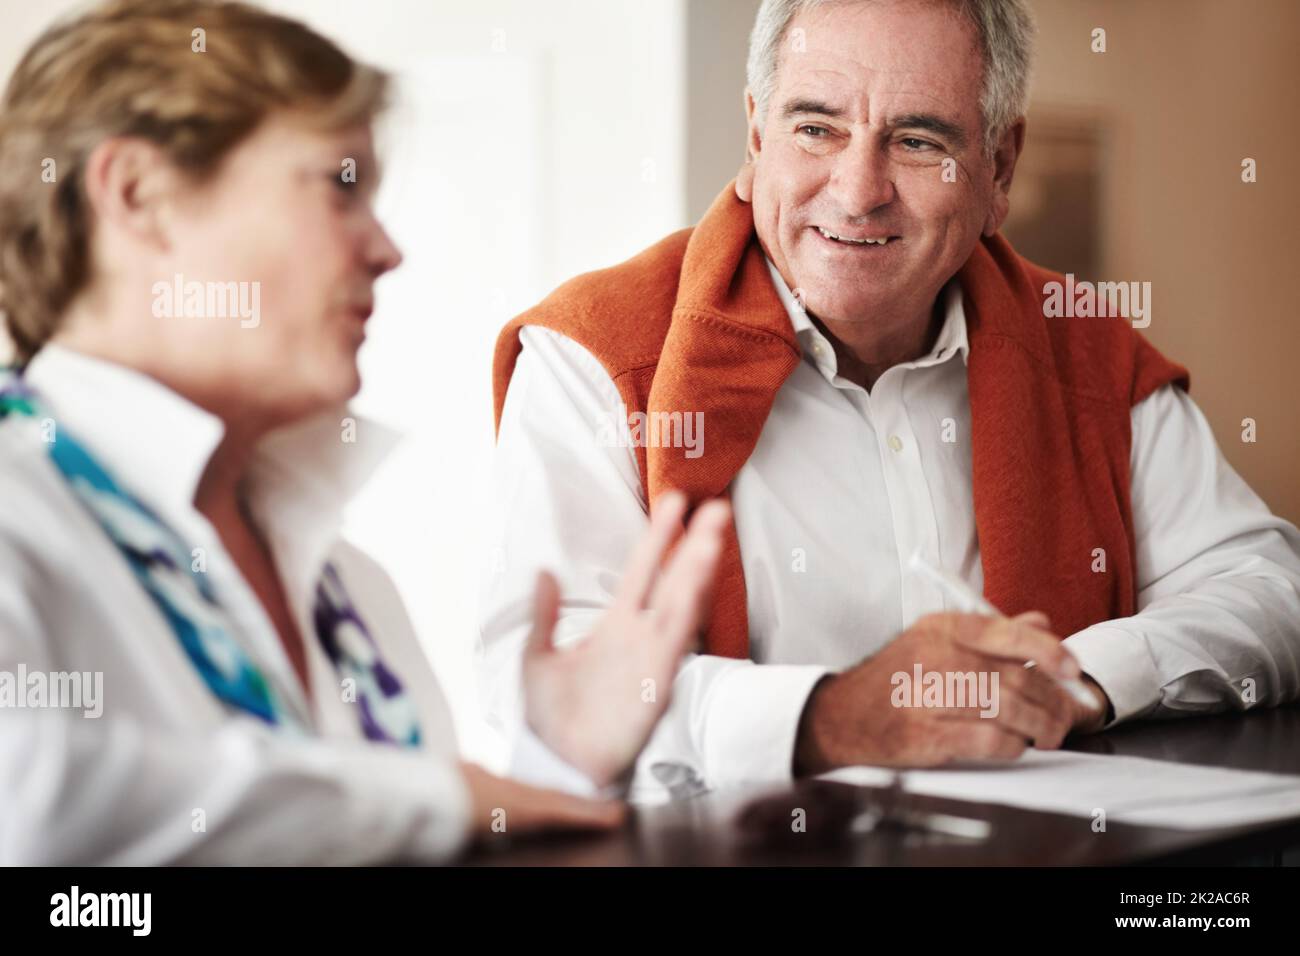 Unterhaltung an der Rezeption. Ein älterer Mann und seine Frau füllen an der Rezeption des Hotels Formulare aus. Stockfoto